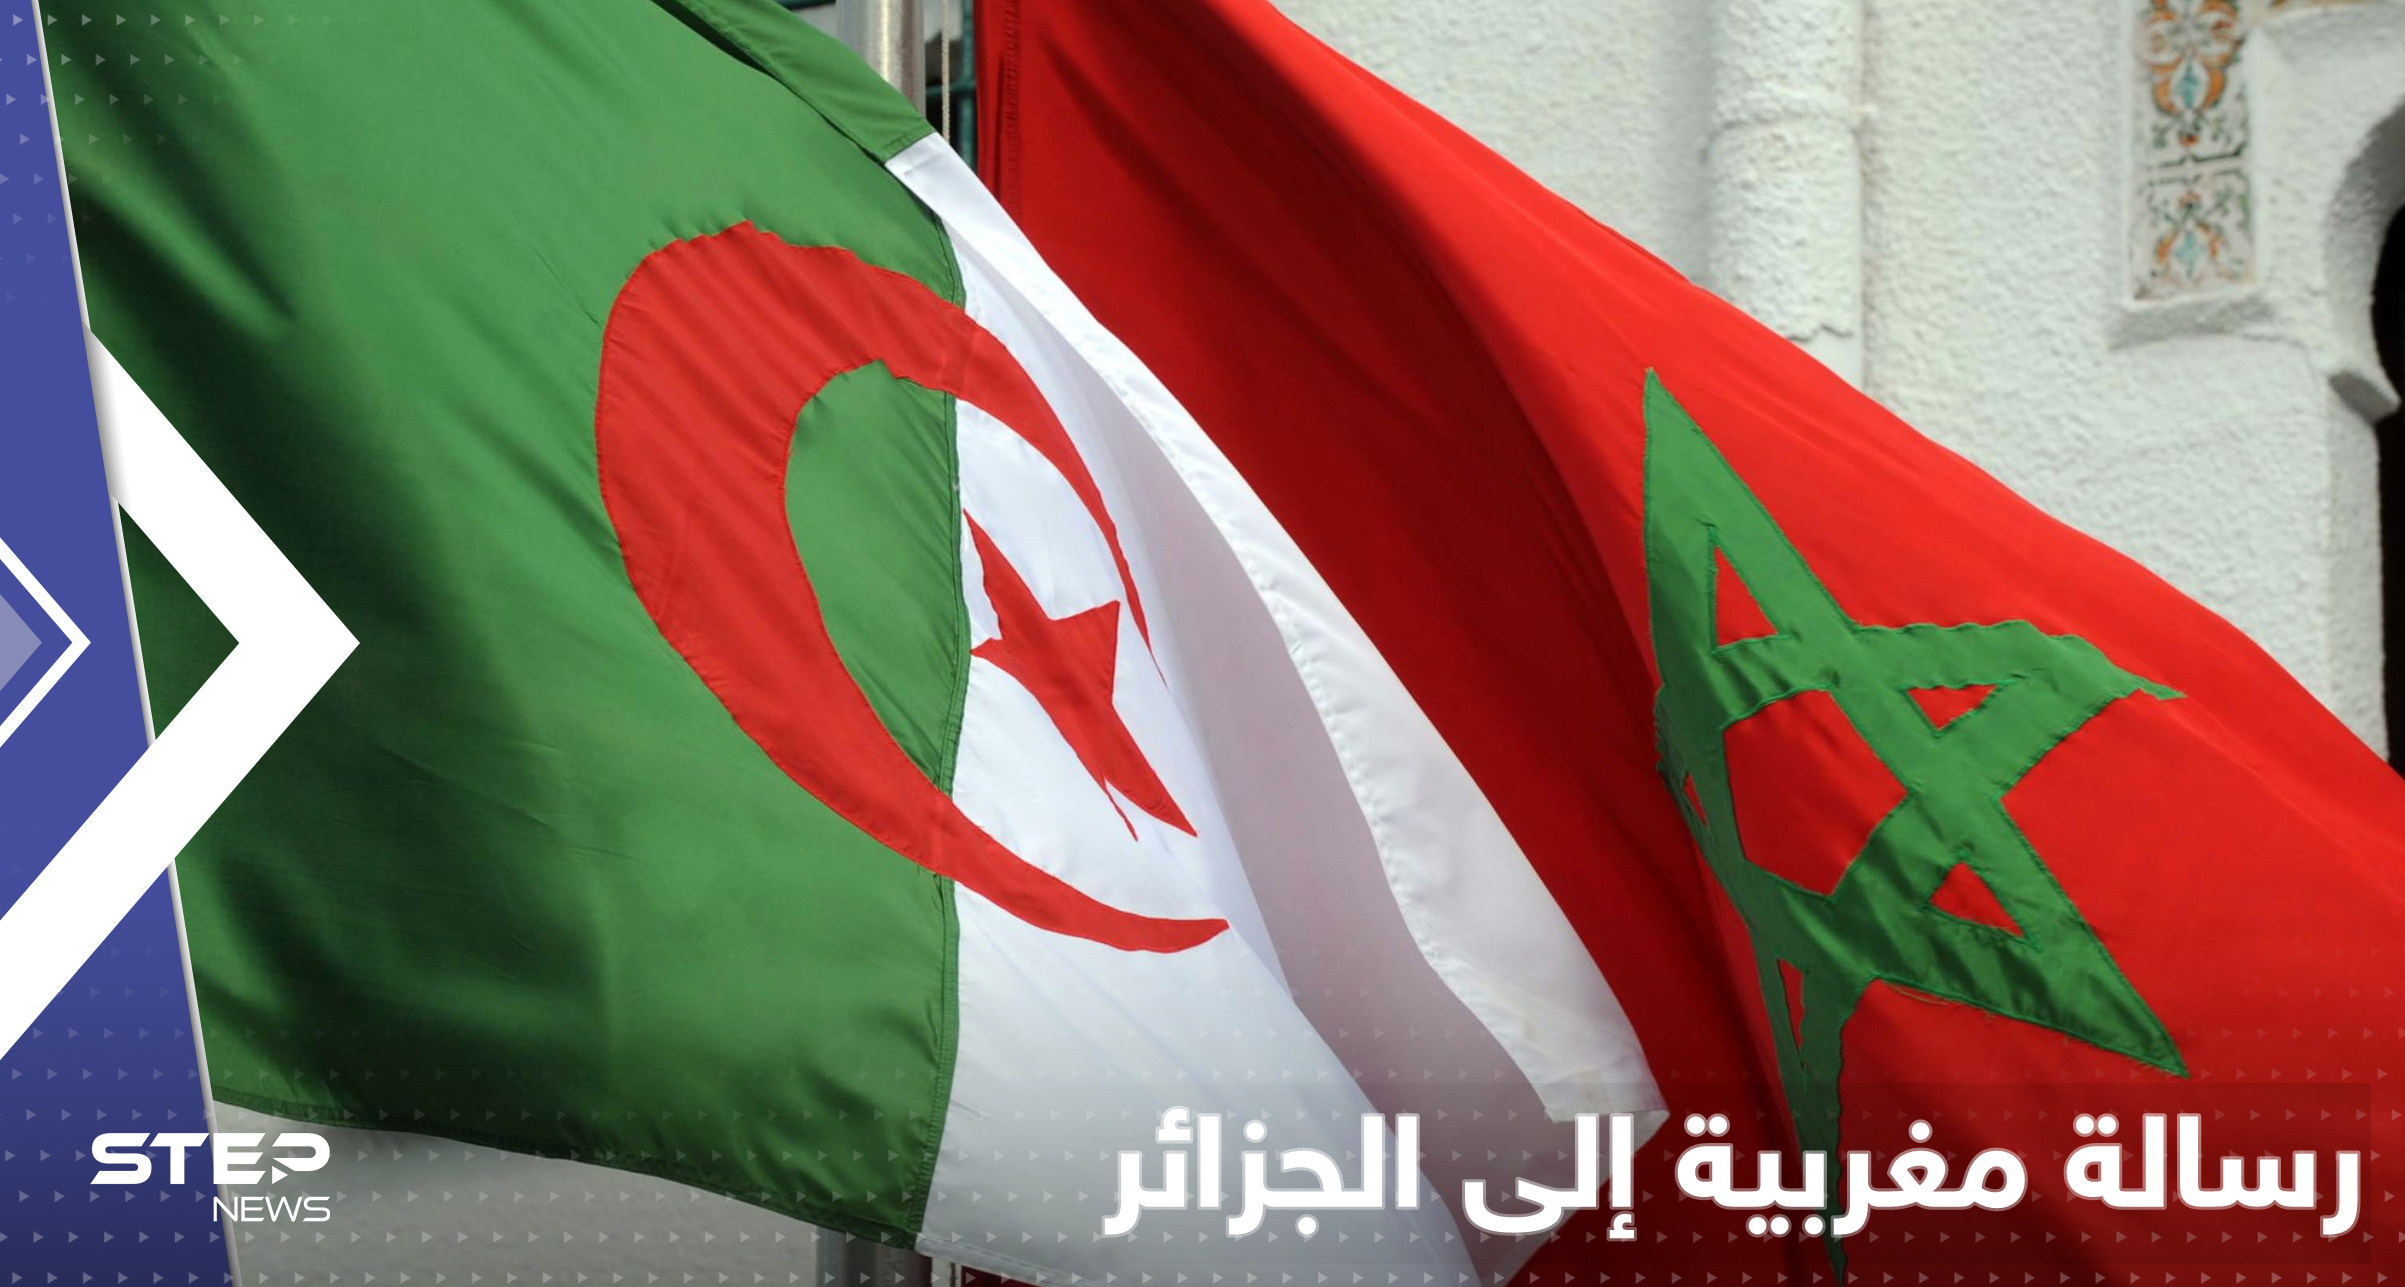 الجزائر تضاعف الميزانية العسكرية والمغرب يبعث إليها رسالة